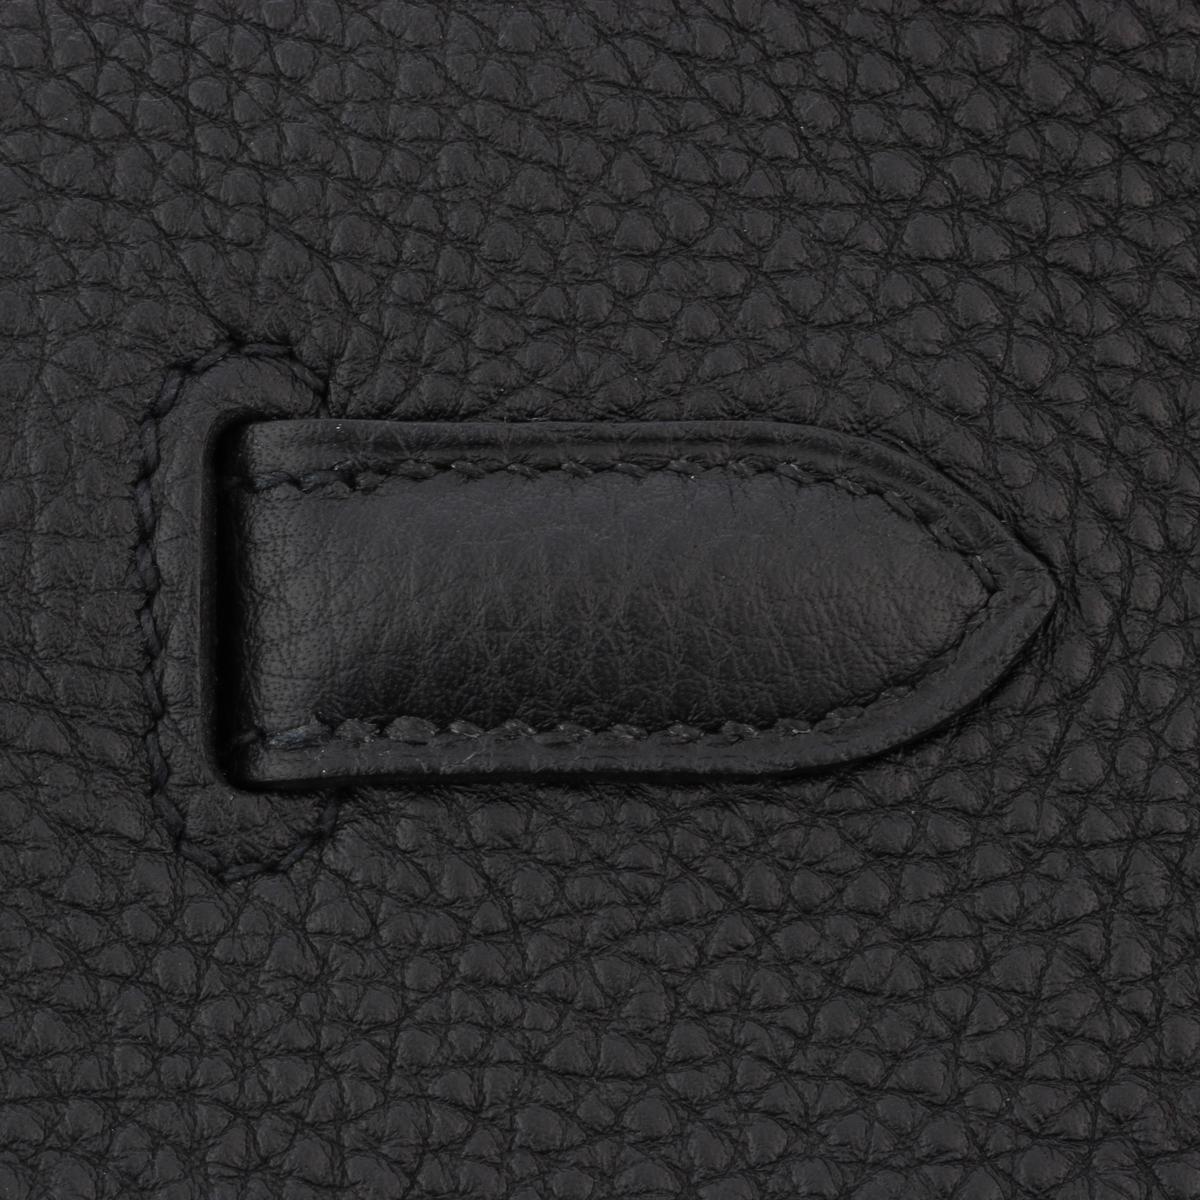 Hermès Birkin Bag 40cm Black Togo Leather with Gold Hardware Stamp N 2010 8